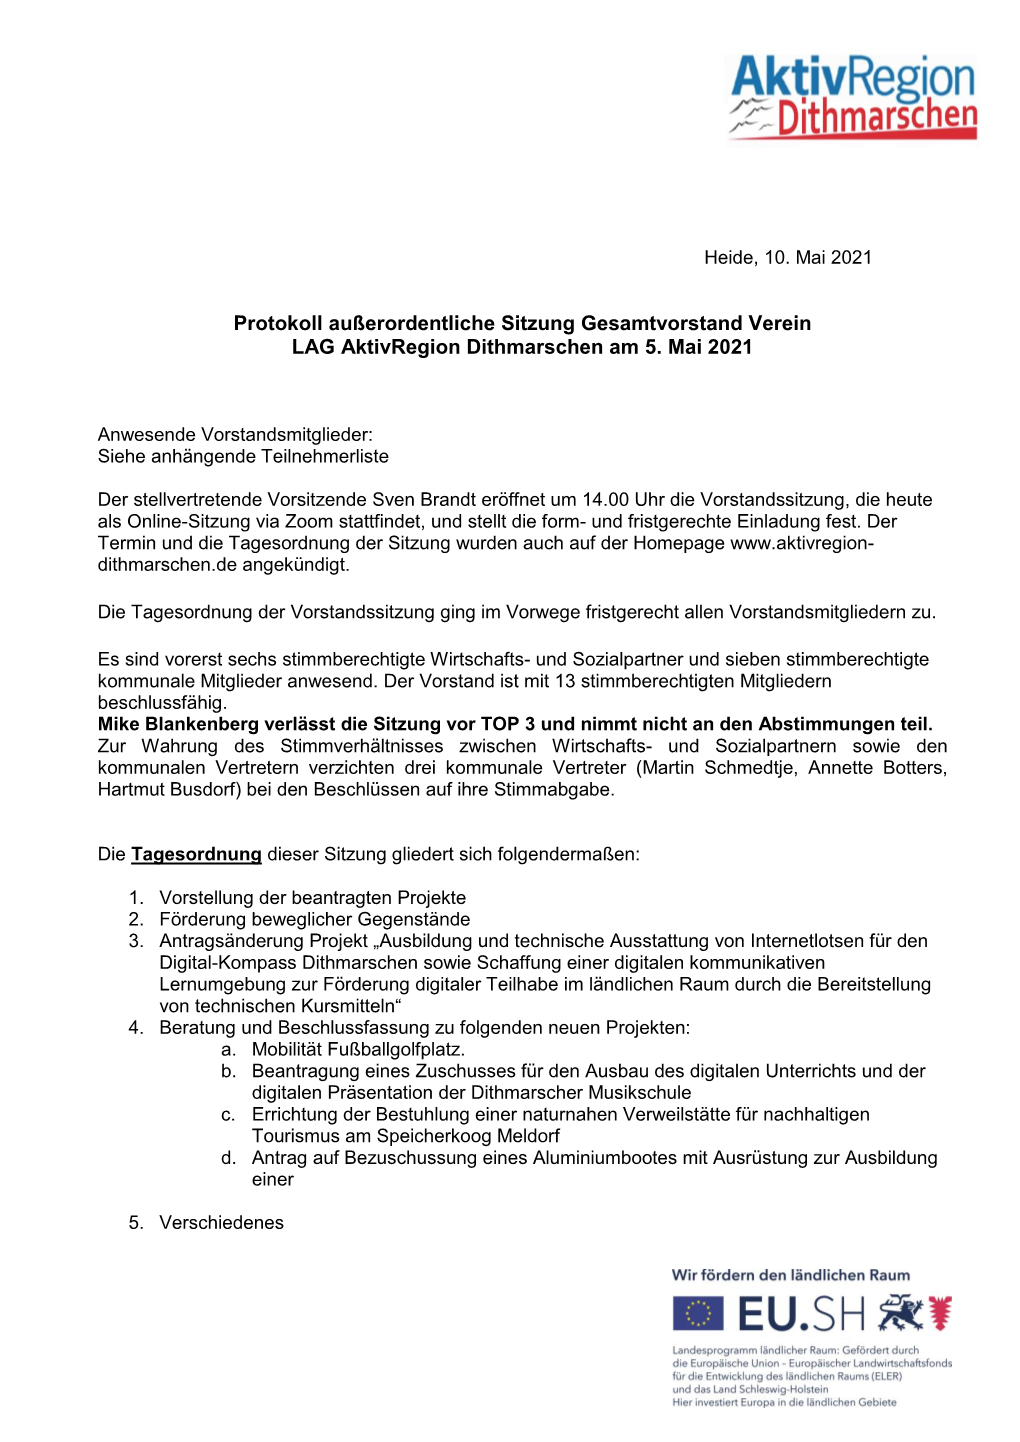 Protokoll Außerordentliche Sitzung Gesamtvorstand Verein LAG Aktivregion Dithmarschen Am 5